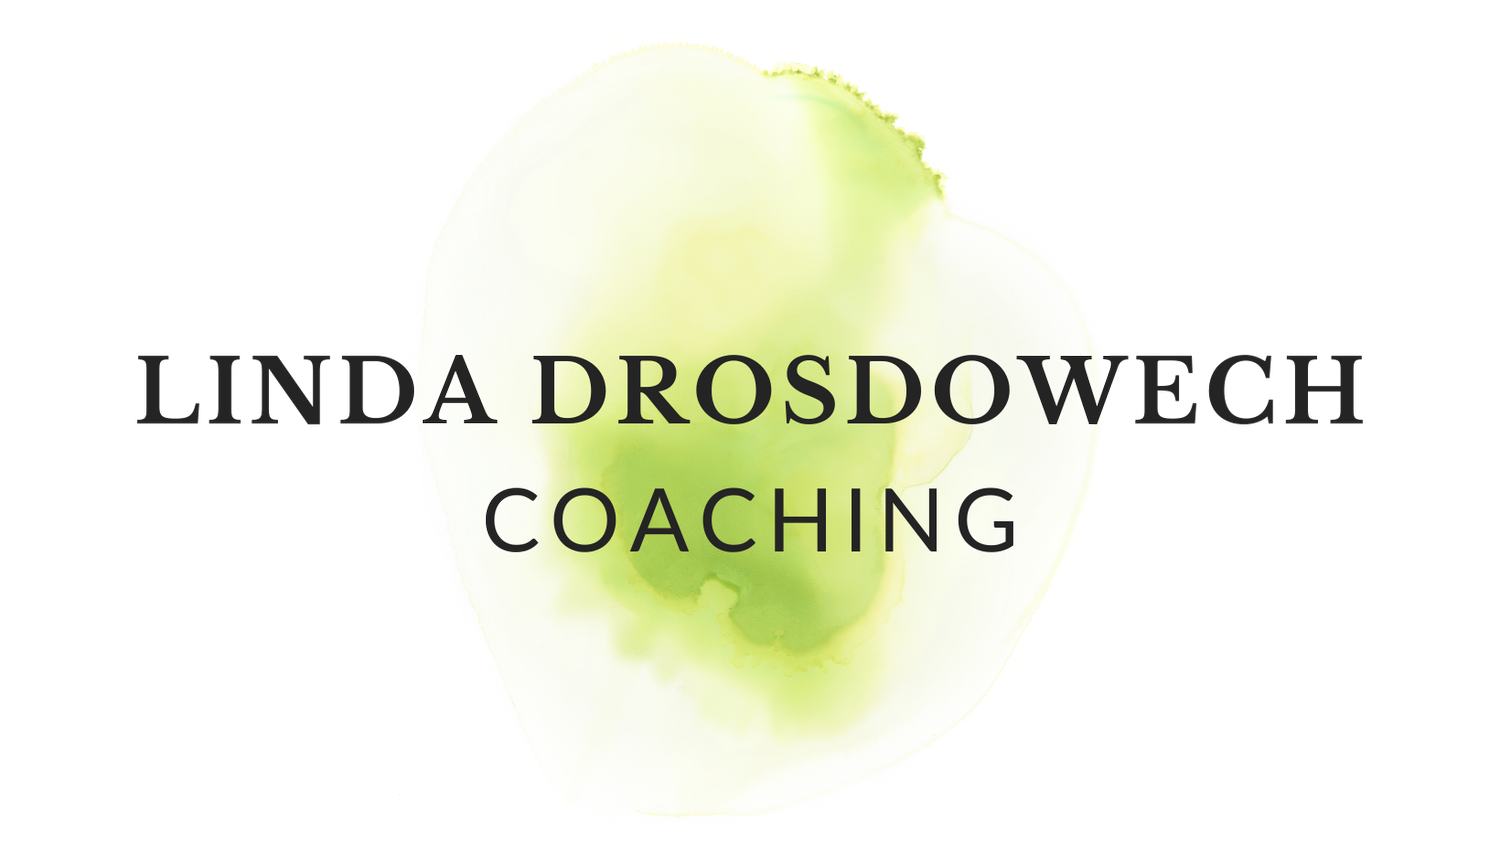 Linda Drosdowech Coaching